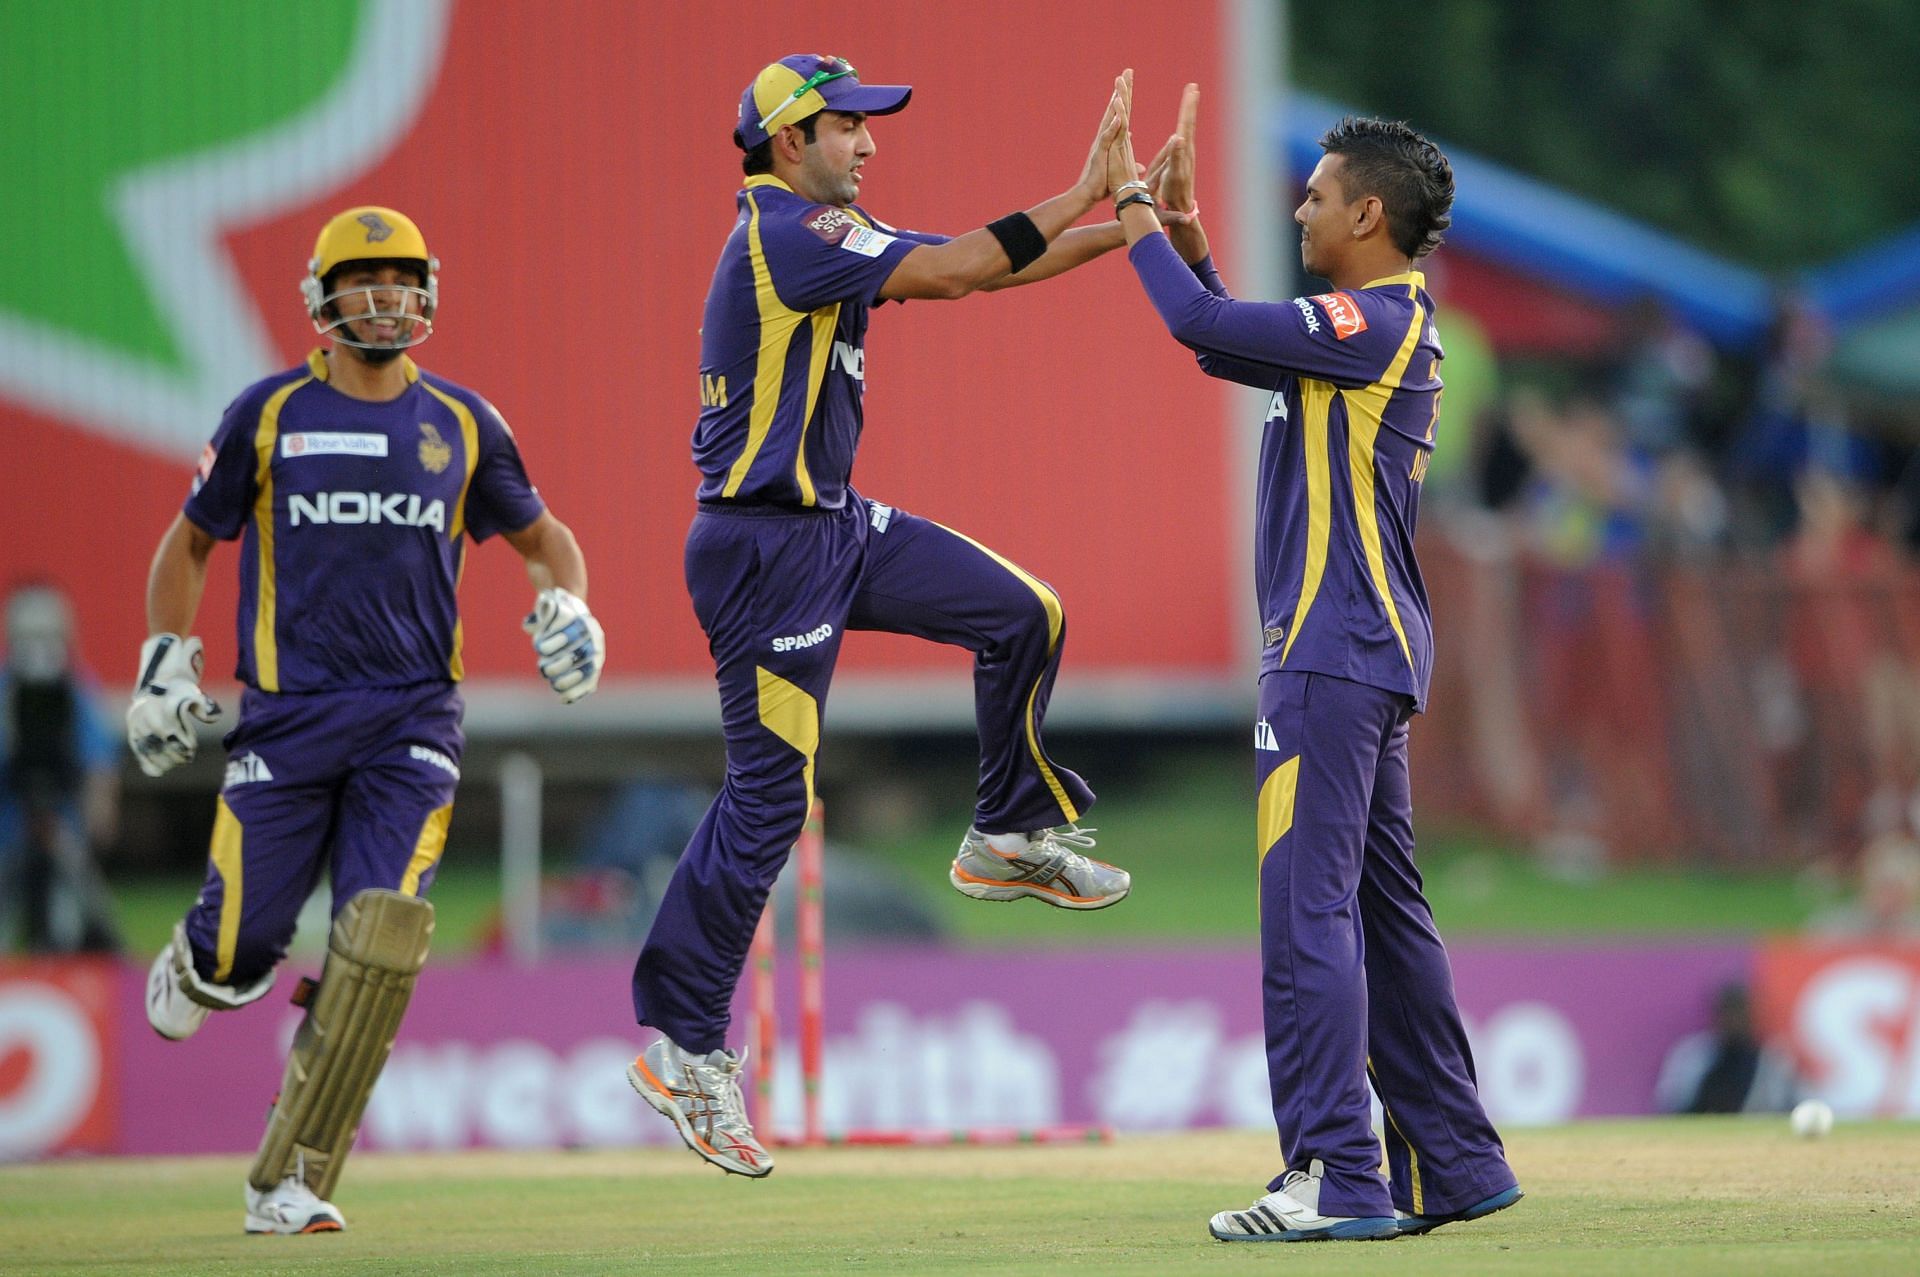 Sunil Narine celebrates a wicket. (Credits: Getty)